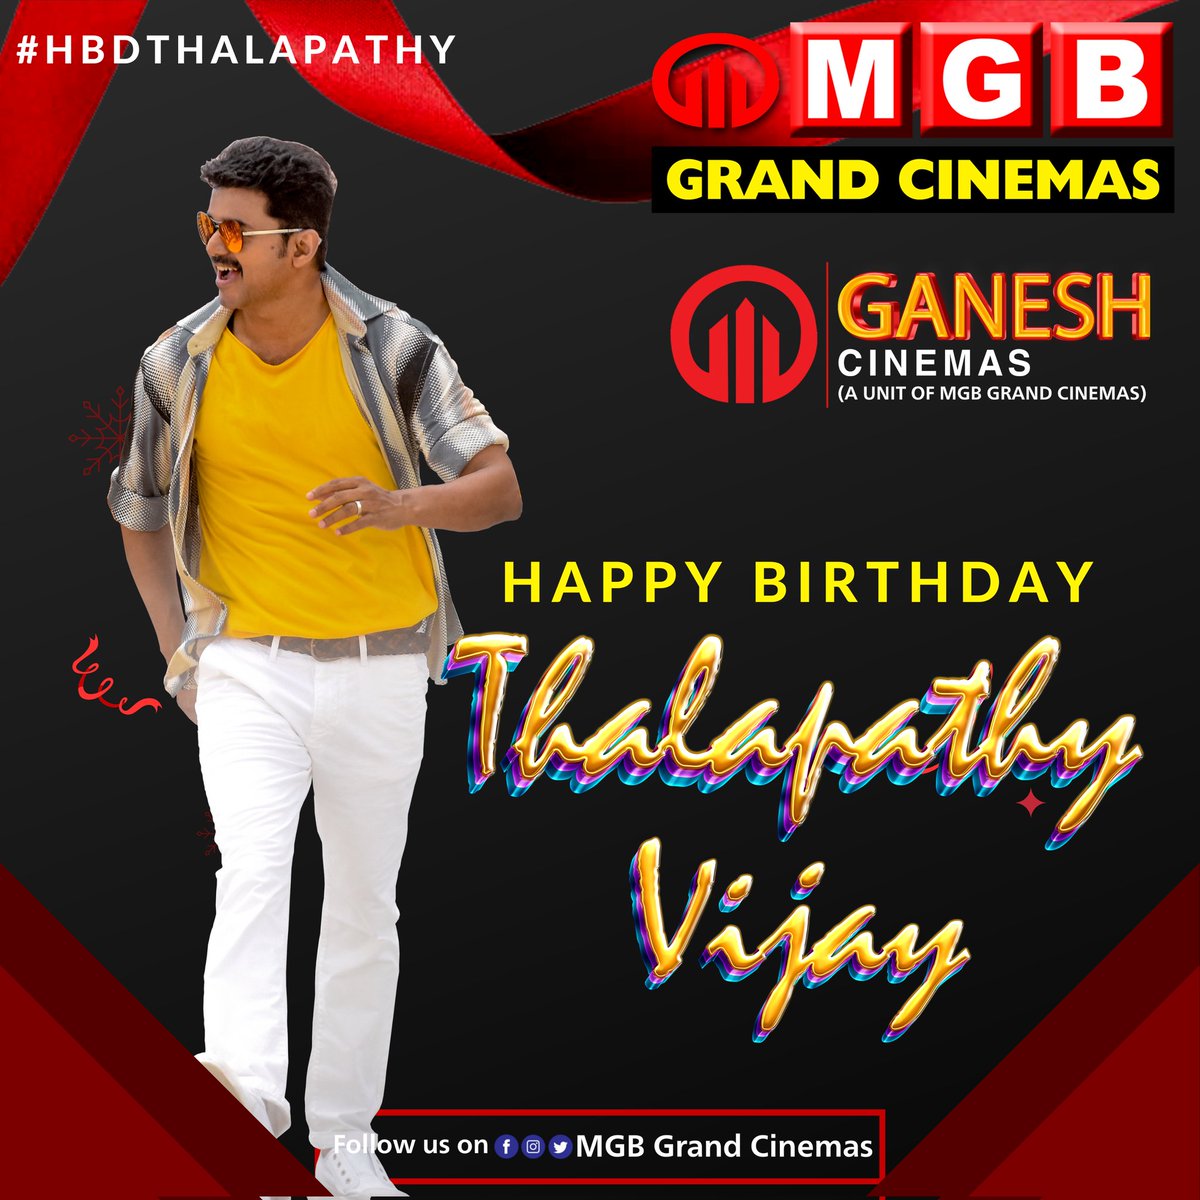 Happy Birthday #ThalapathyVijay 🔥

#Leo #Thalapathy #Vijay #ThalapathyVijayBirthday #LeoFilm #MGBGrandCinemas #MGBCinemas #GaneshCinemas #MGBGaneshCinemas